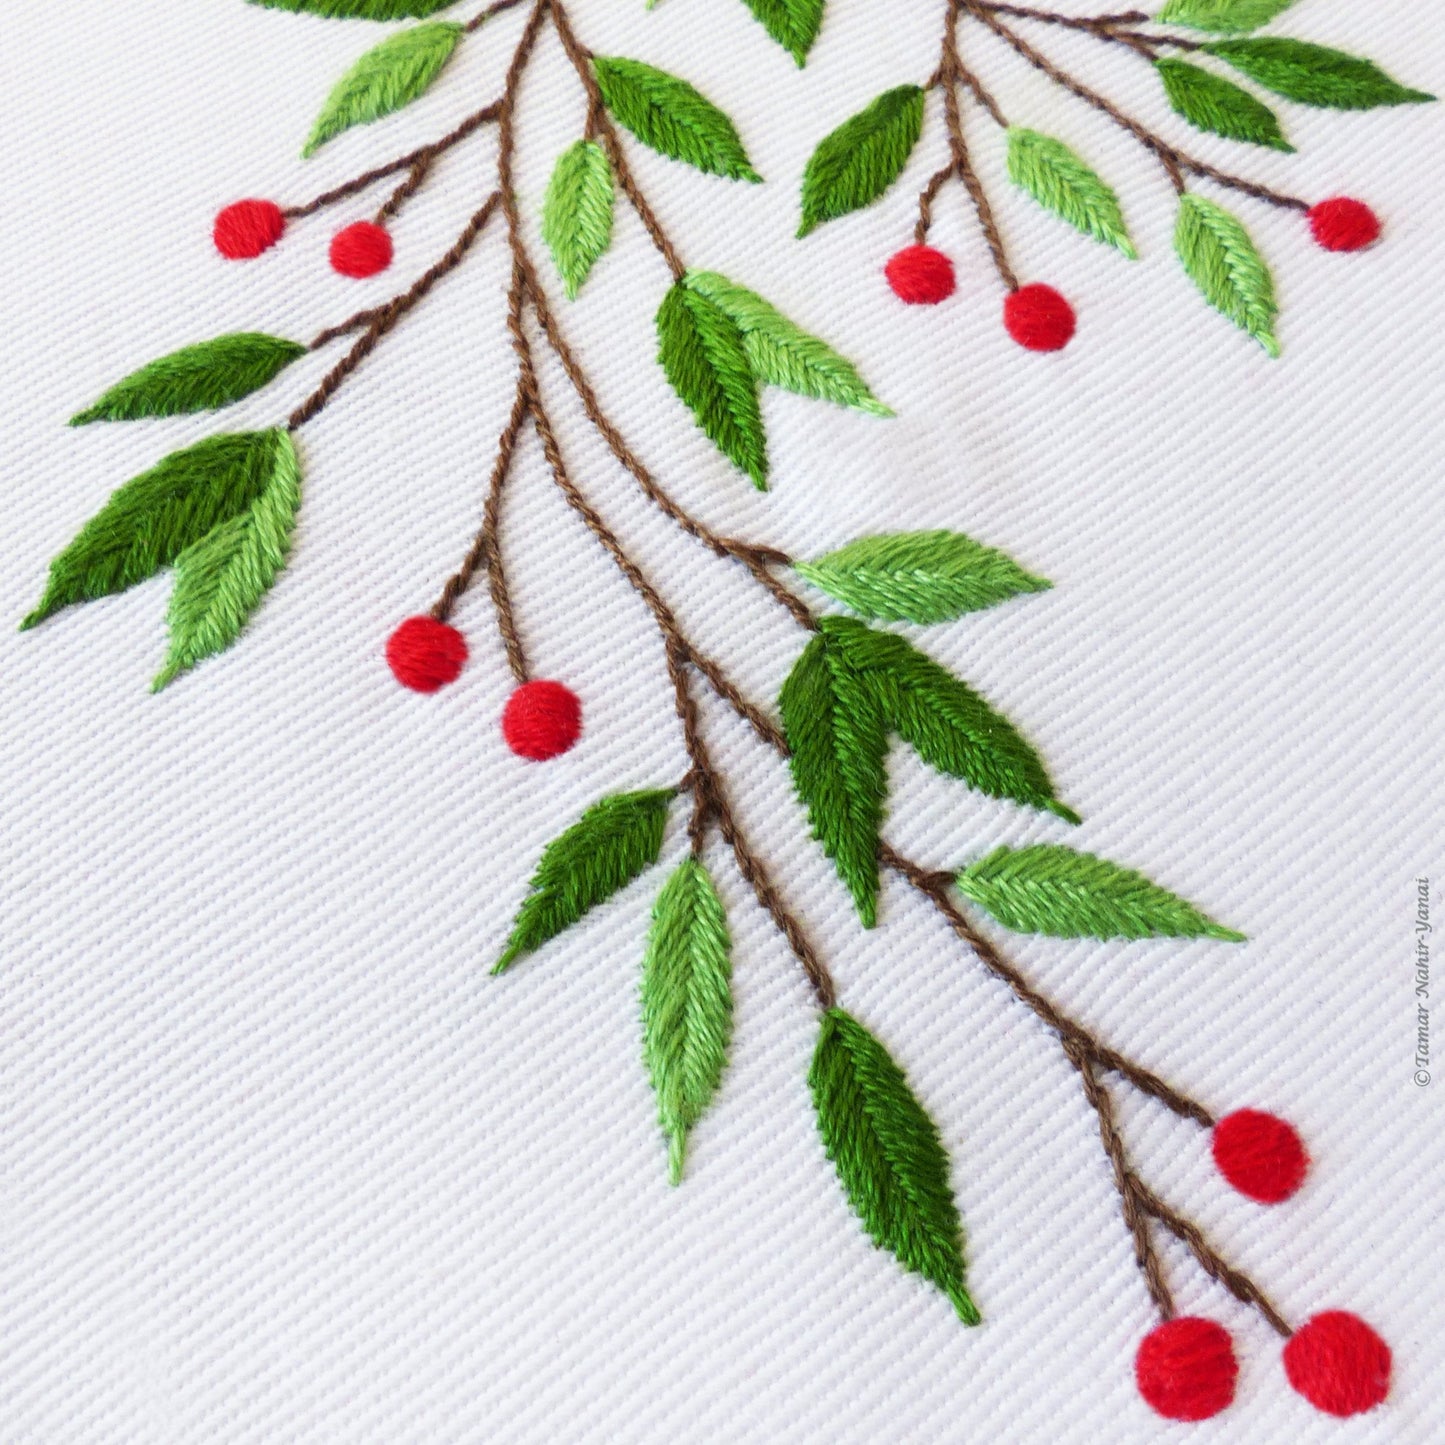 Mistletoe embroidery kit